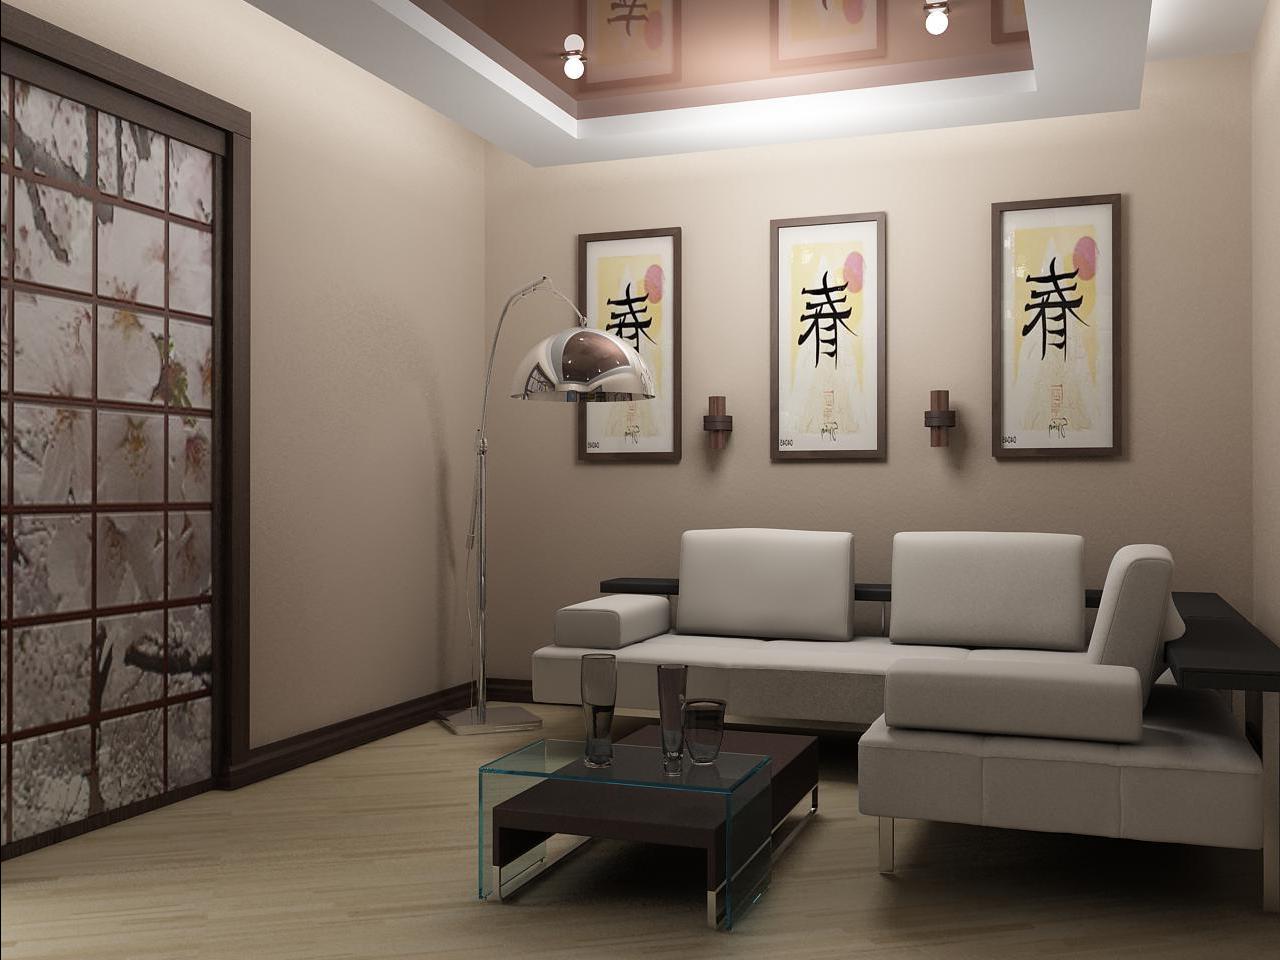 világos japán stílusú nappali kialakítás